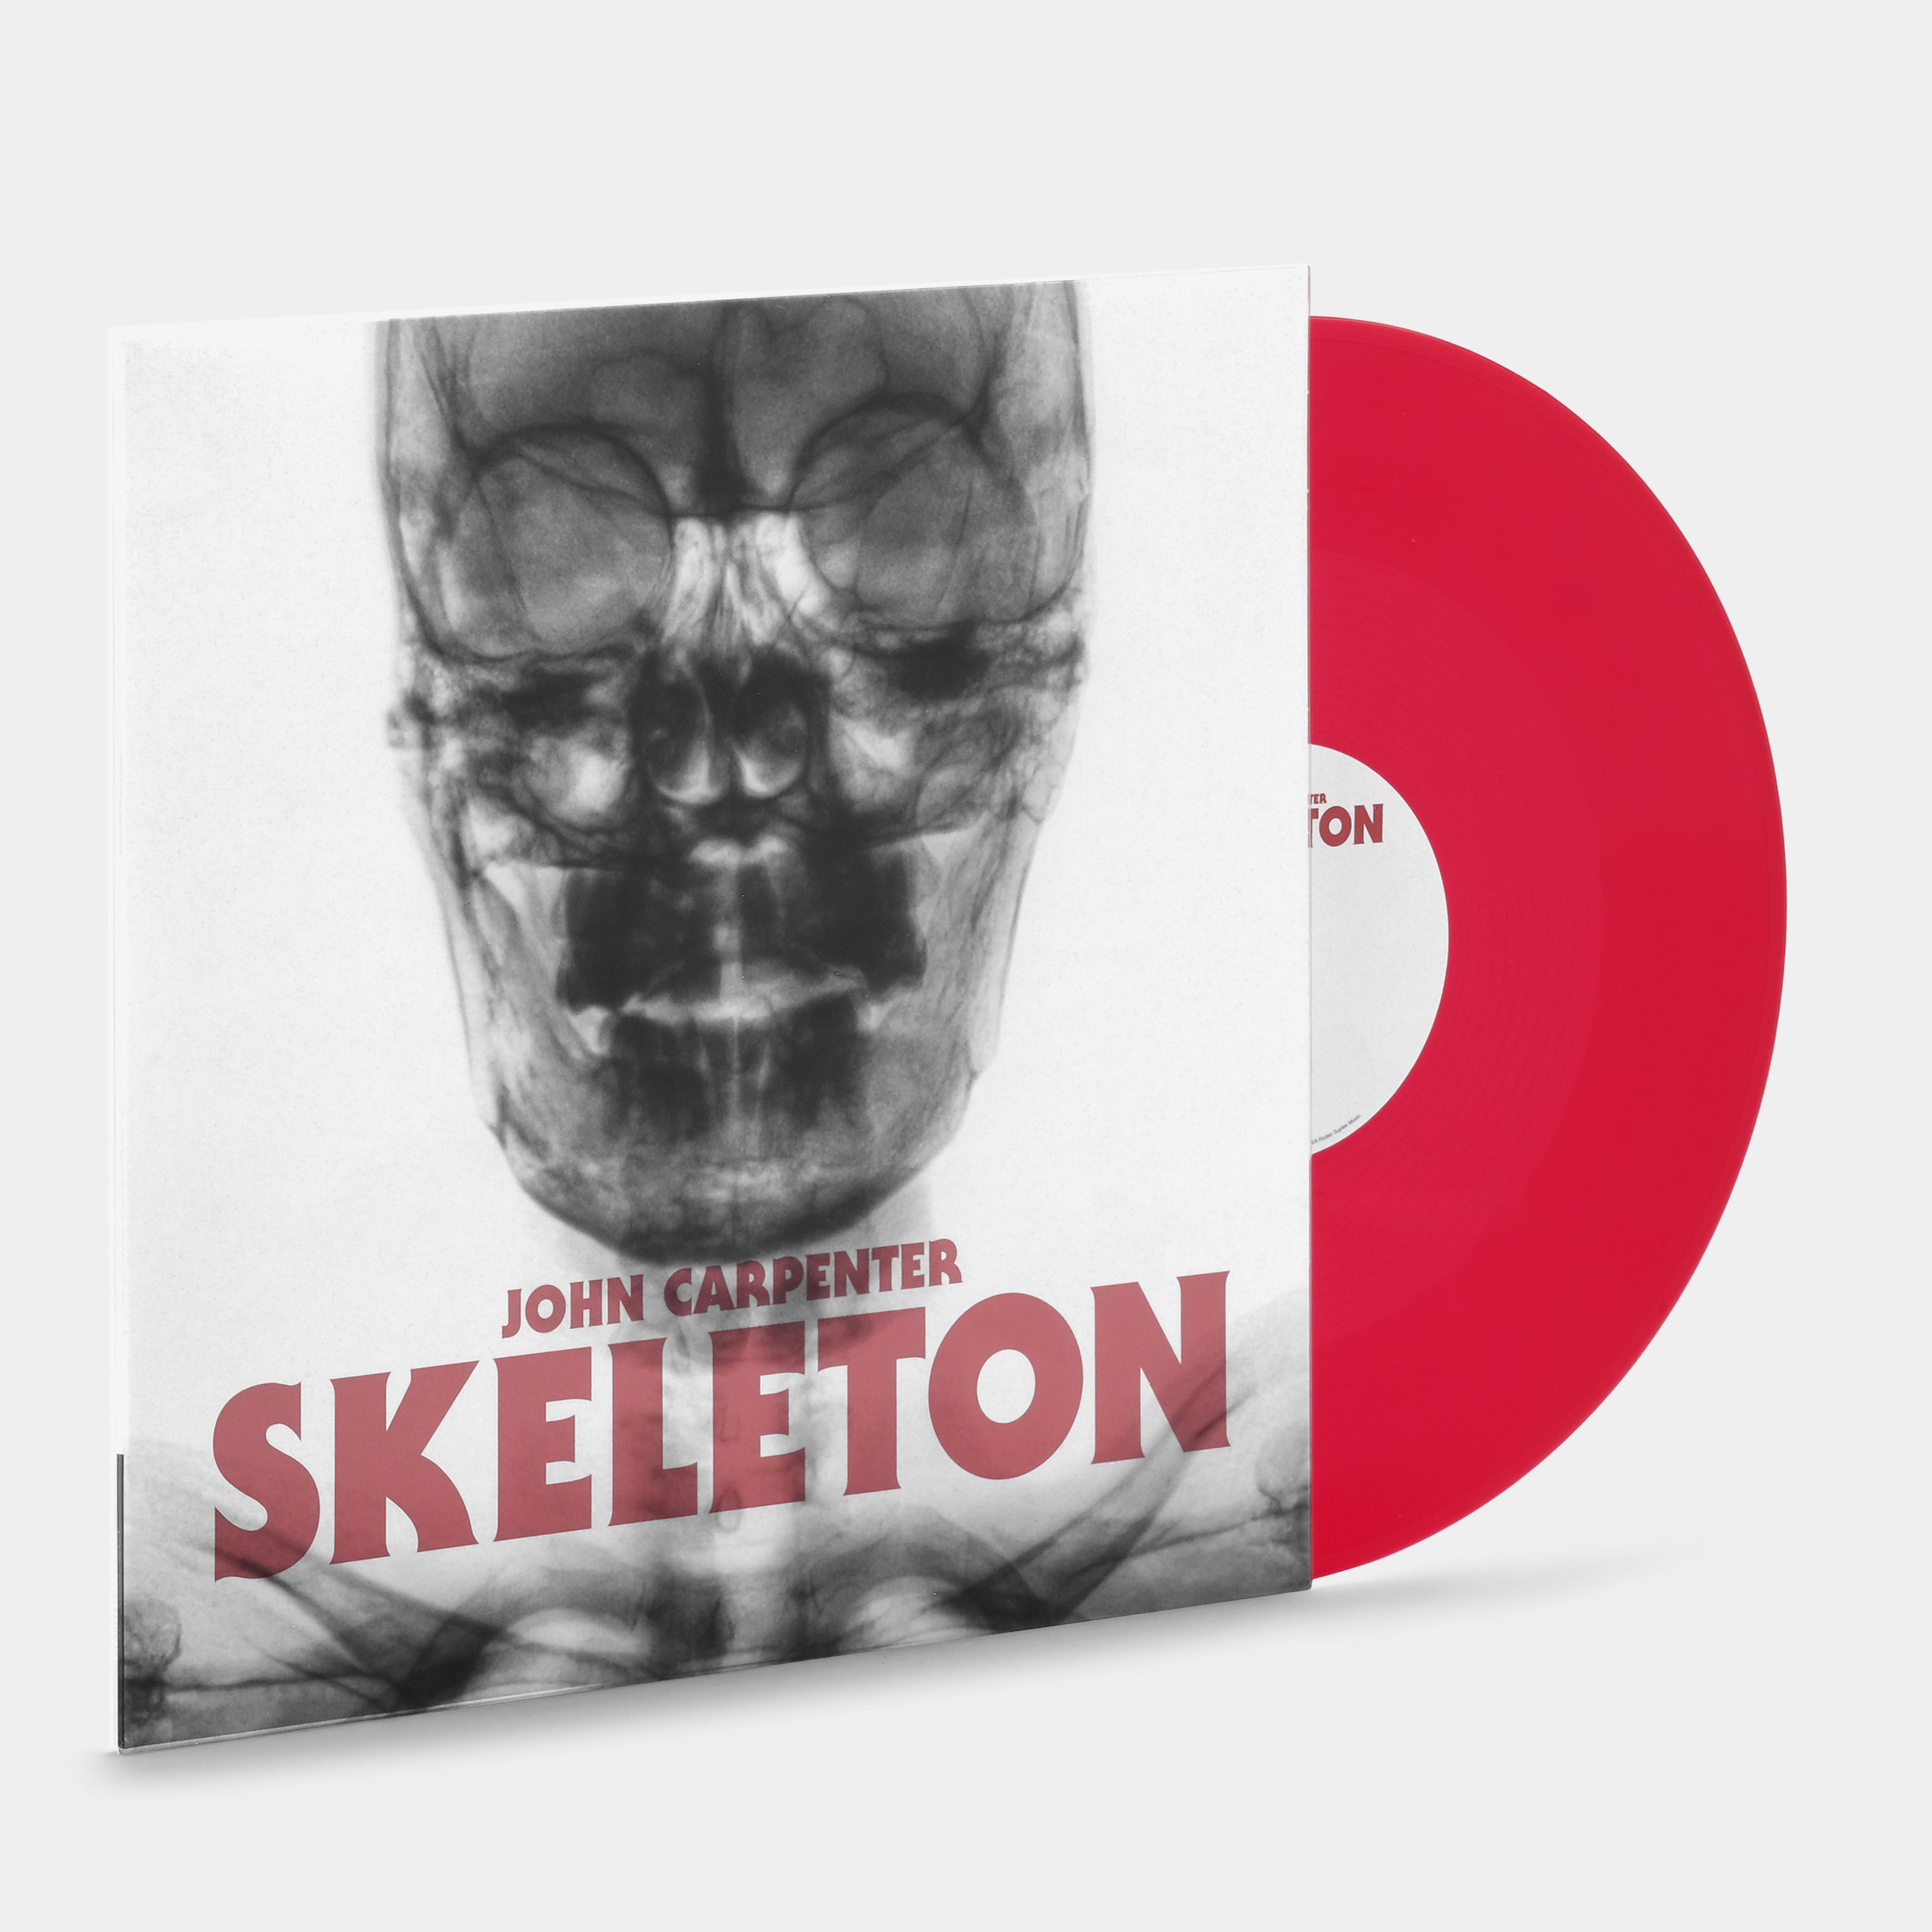 John Carpenter - Skeleton LP Blood Red Vinyl Record